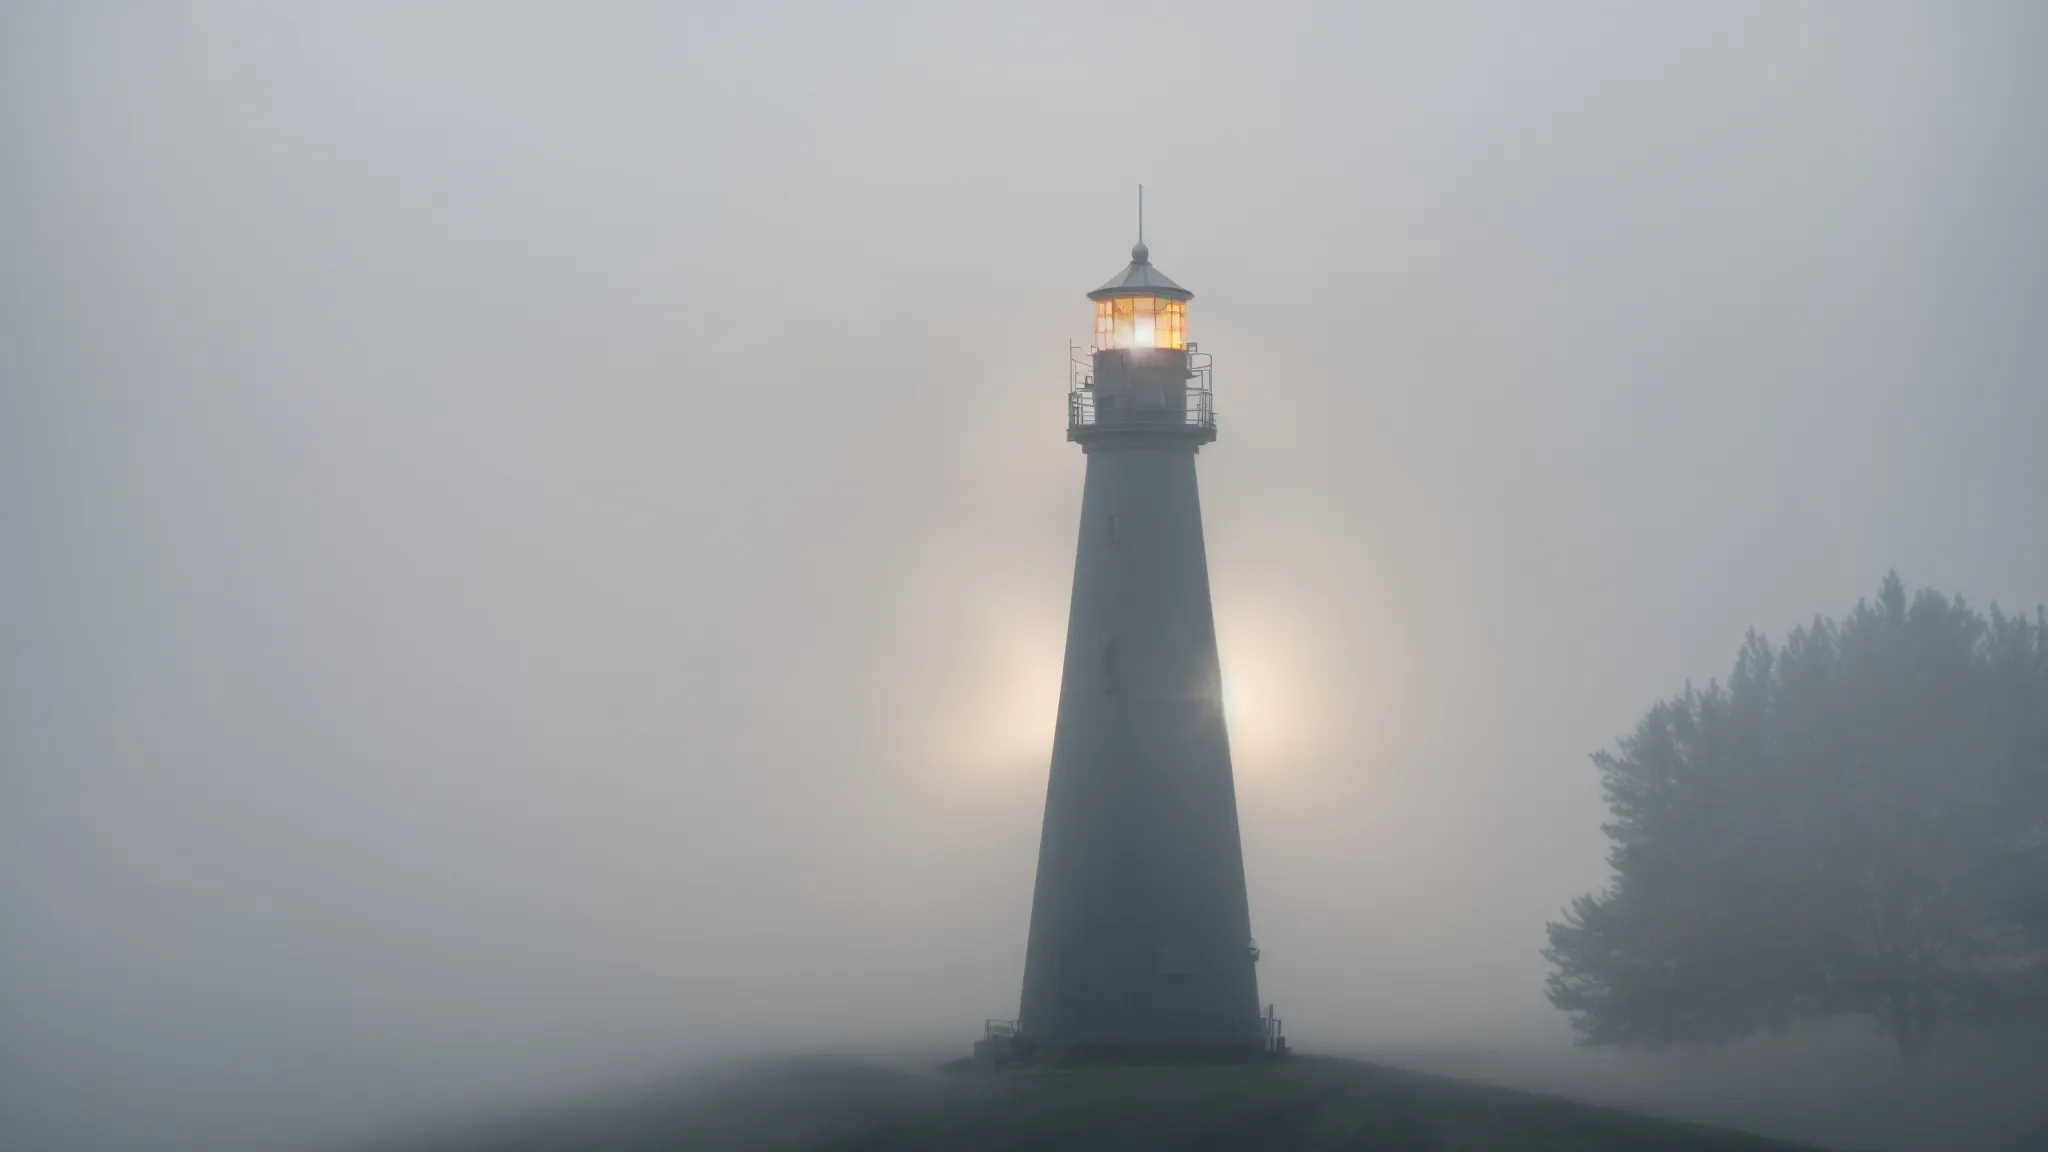 a beacon shining through the fog, guiding a path forward.